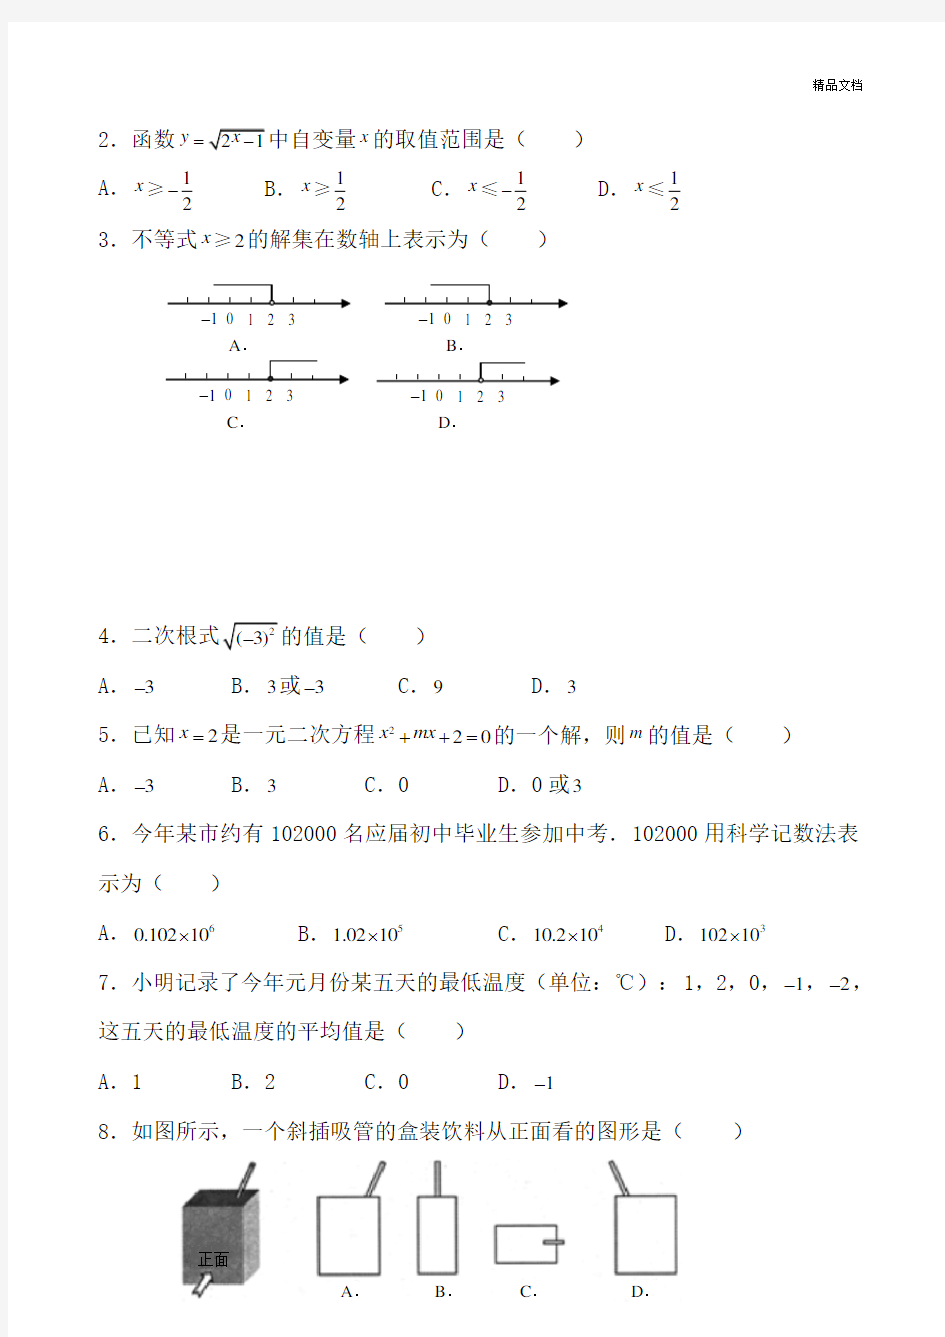 (中考真题)2019年武汉市中考试题数学试题